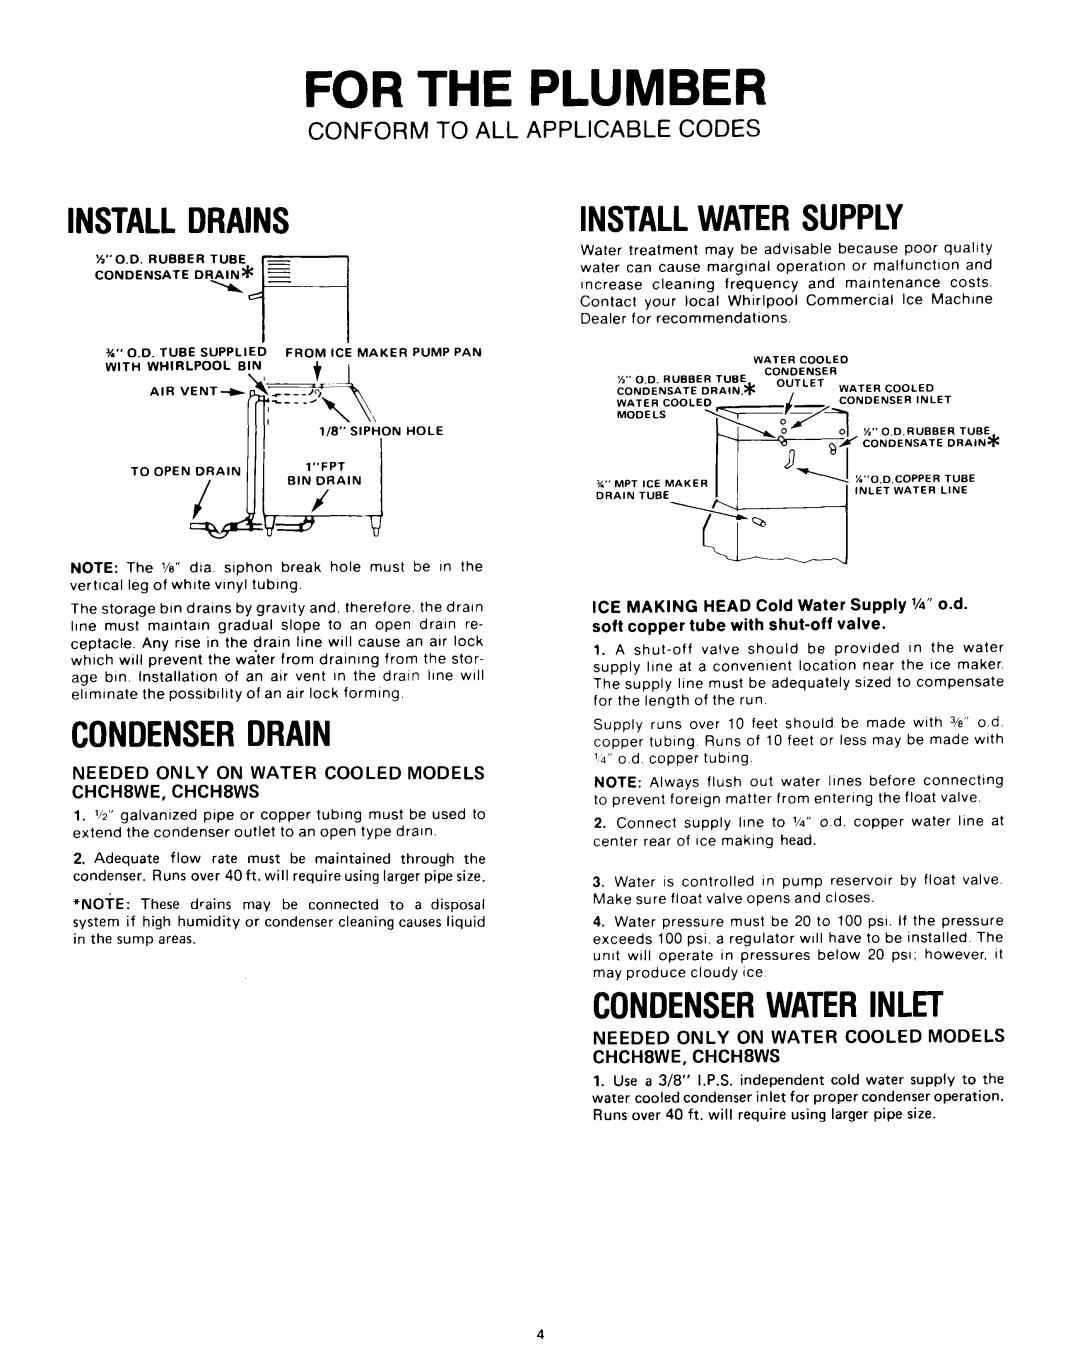 Whirlpool CHCH8AE, CHCH8WS, CHCH8AS For The Plumber, Installdrains, Condenserdrain, Installwatersupply, Condenserwaterinlet 